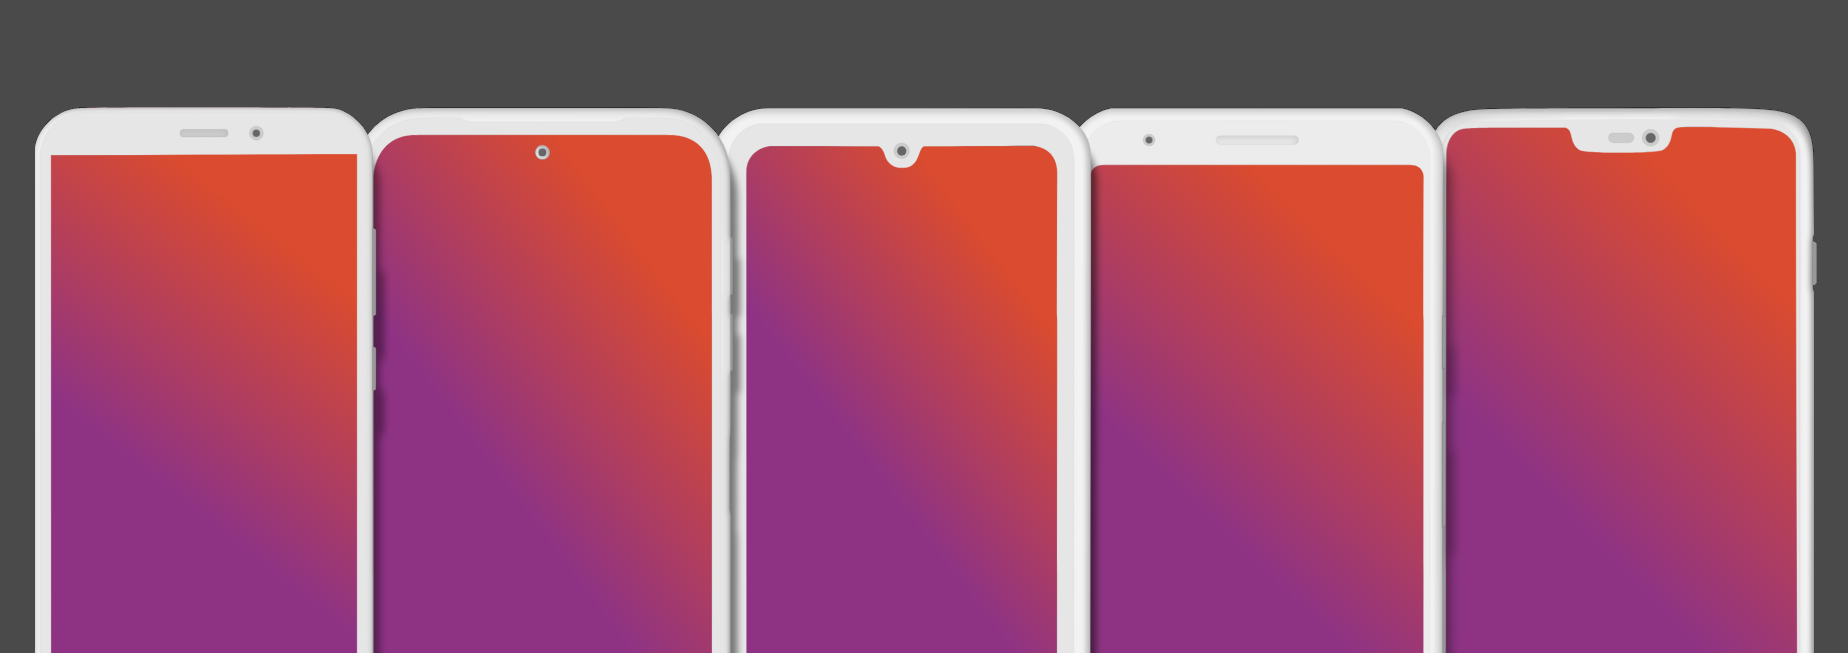 SVG Phone Mockups.png